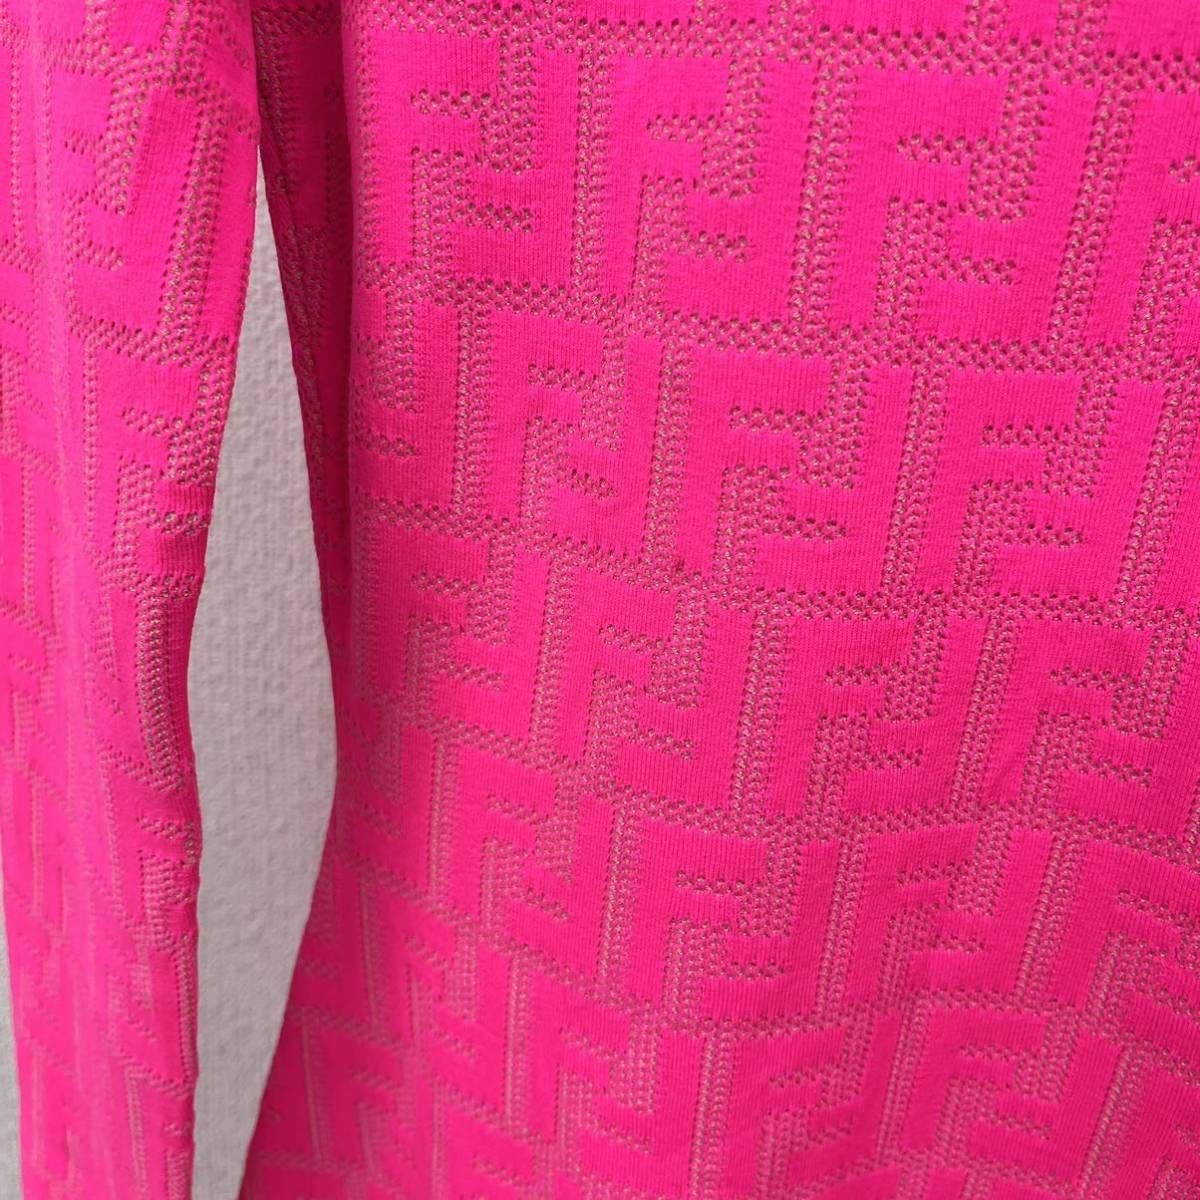 FENDI×Nicki Minaj Fendi ni key *mina-ju collaboration FENDI Prints On FF Zucca tight knitted One-piece FZD816 AAEL